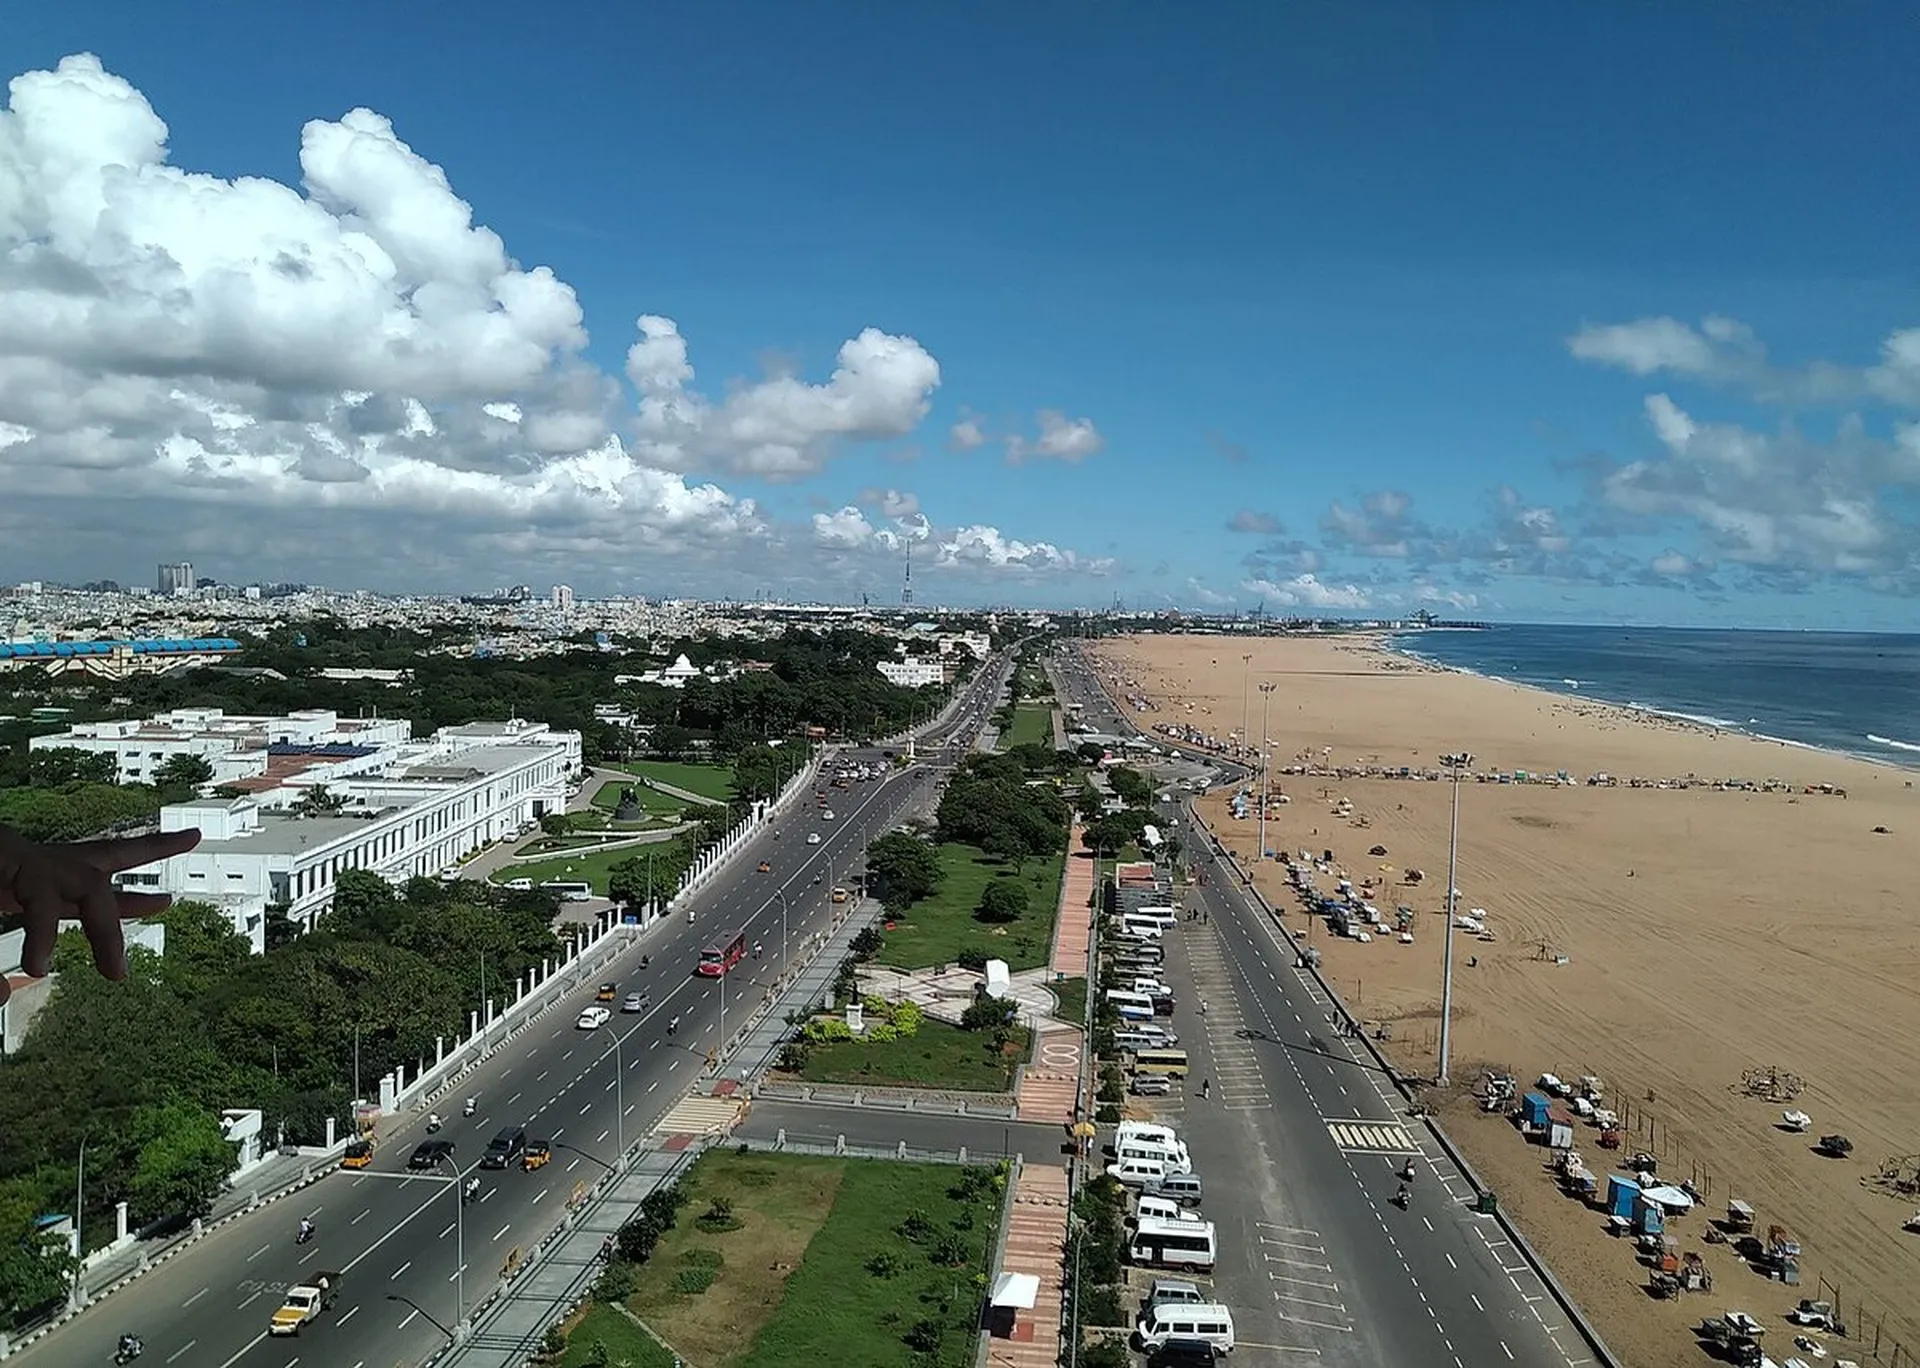 Explore Chennai